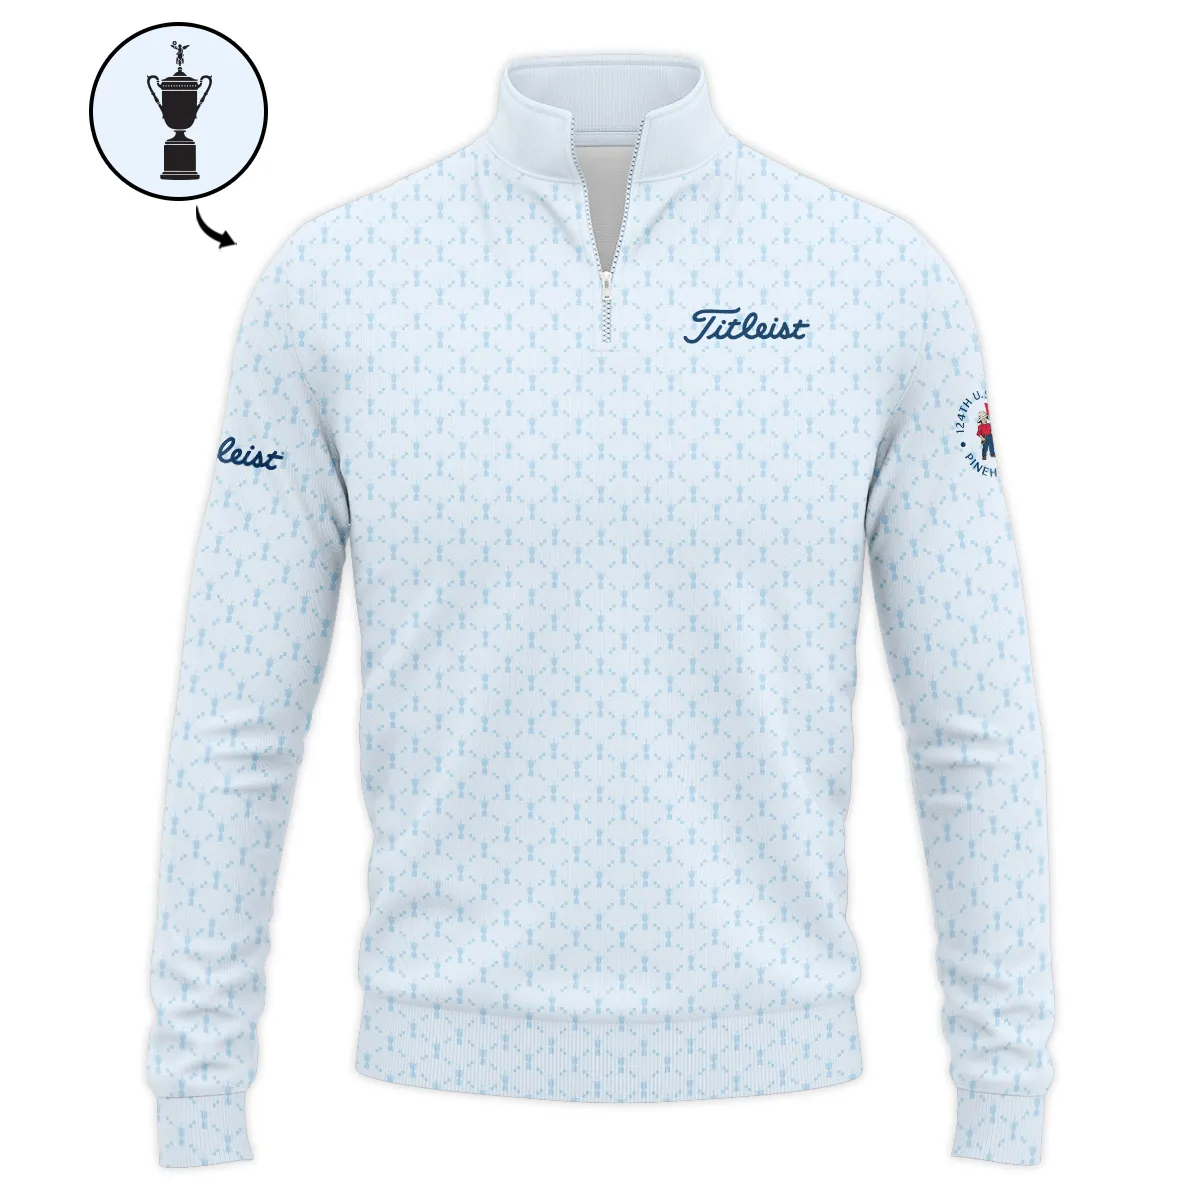 Golf Sport Pattern Blue Sport Uniform 124th U.S. Open Pinehurst Titleist Zipper Polo Shirt Style Classic